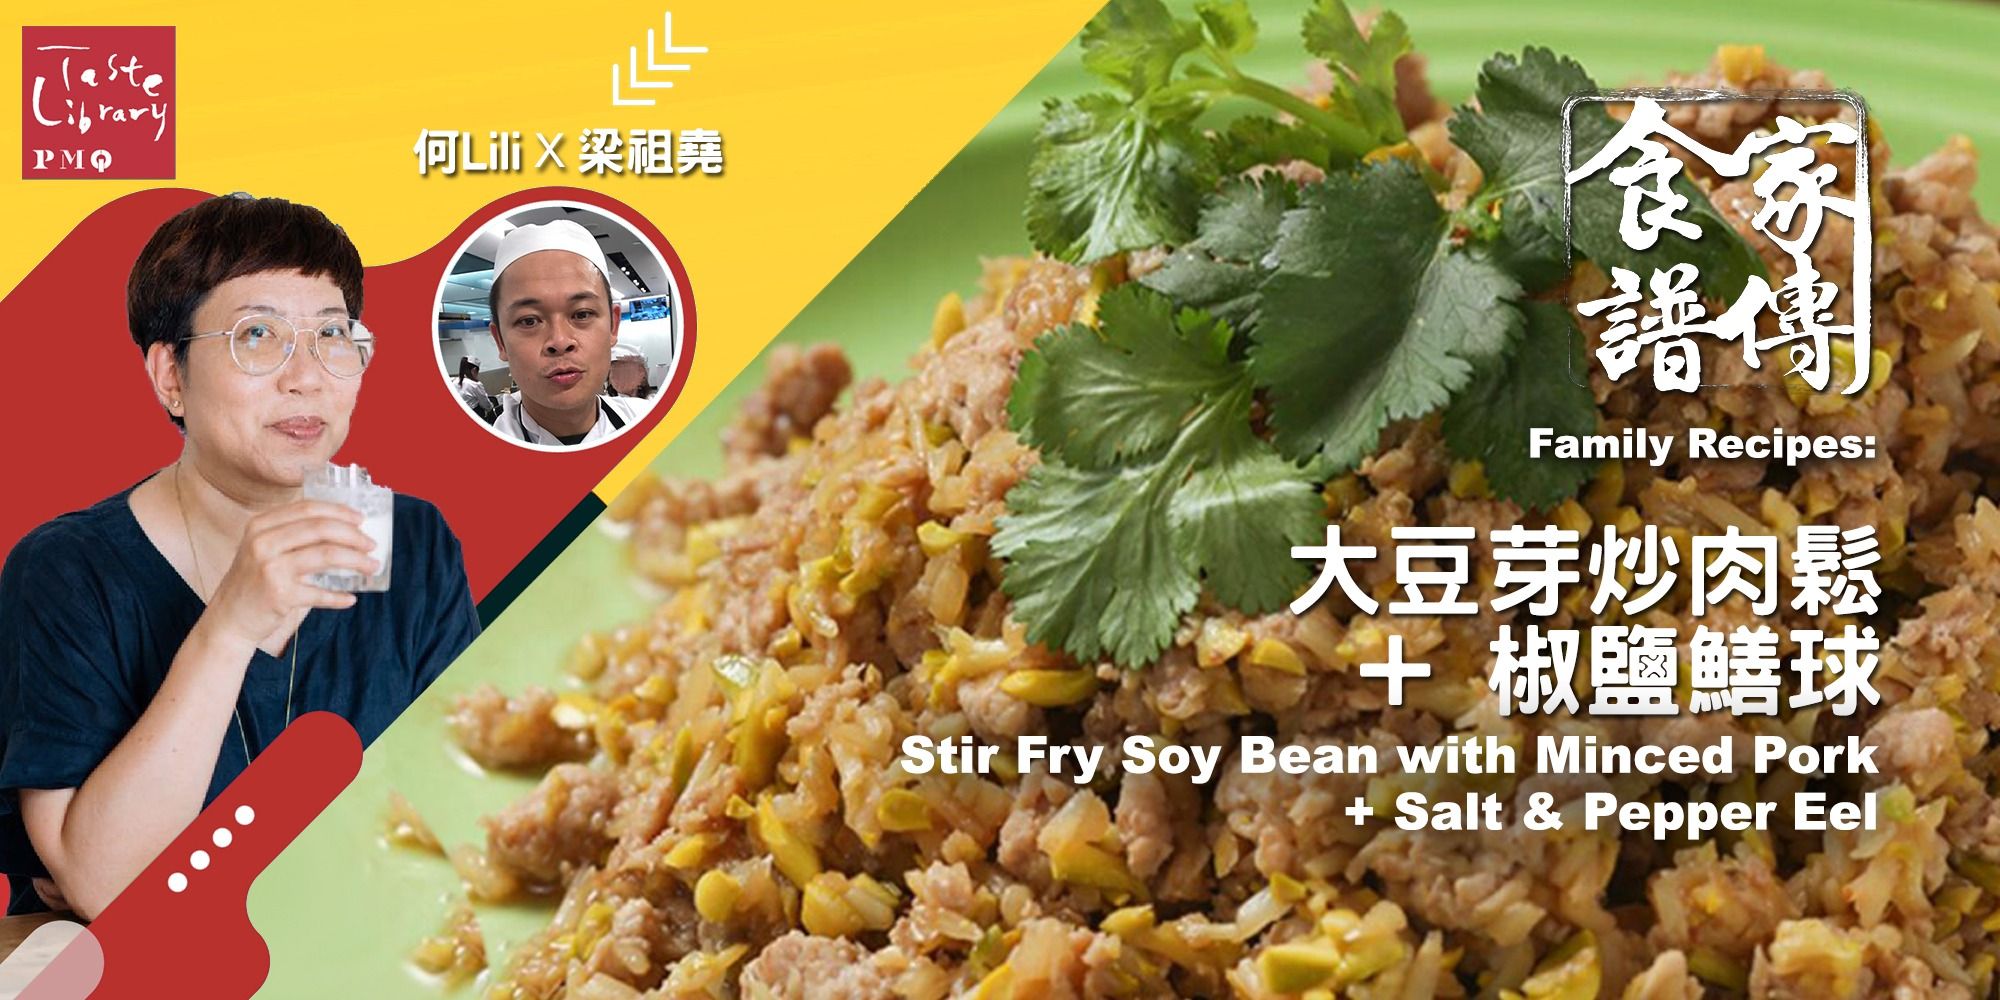 家傳食譜：大豆芽炒肉鬆 + 椒鹽鱔球 Family Recipes Workshop : Stir Fry Soy Bean with Minced Pork + Salt &amp; Pepper Eel (嘉賓: 梁祖堯)